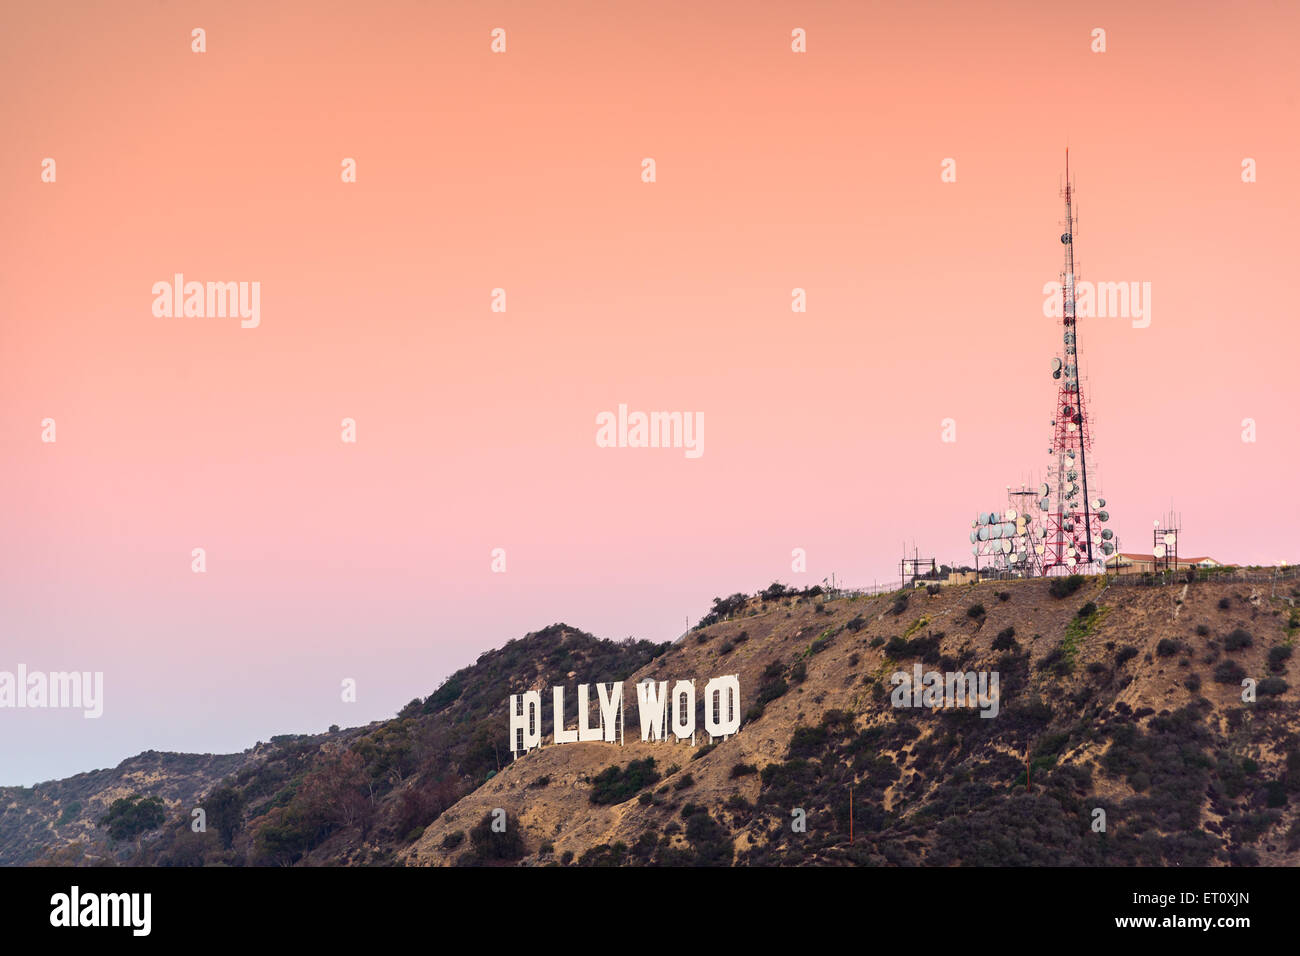 LOS ANGELES, Kalifornien - 6. November 2013: Hollywood-Schriftzug in Los Angeles, Kalifornien. Das Wahrzeichen Zeichen stammt aus dem Jahr 1923. Stockfoto